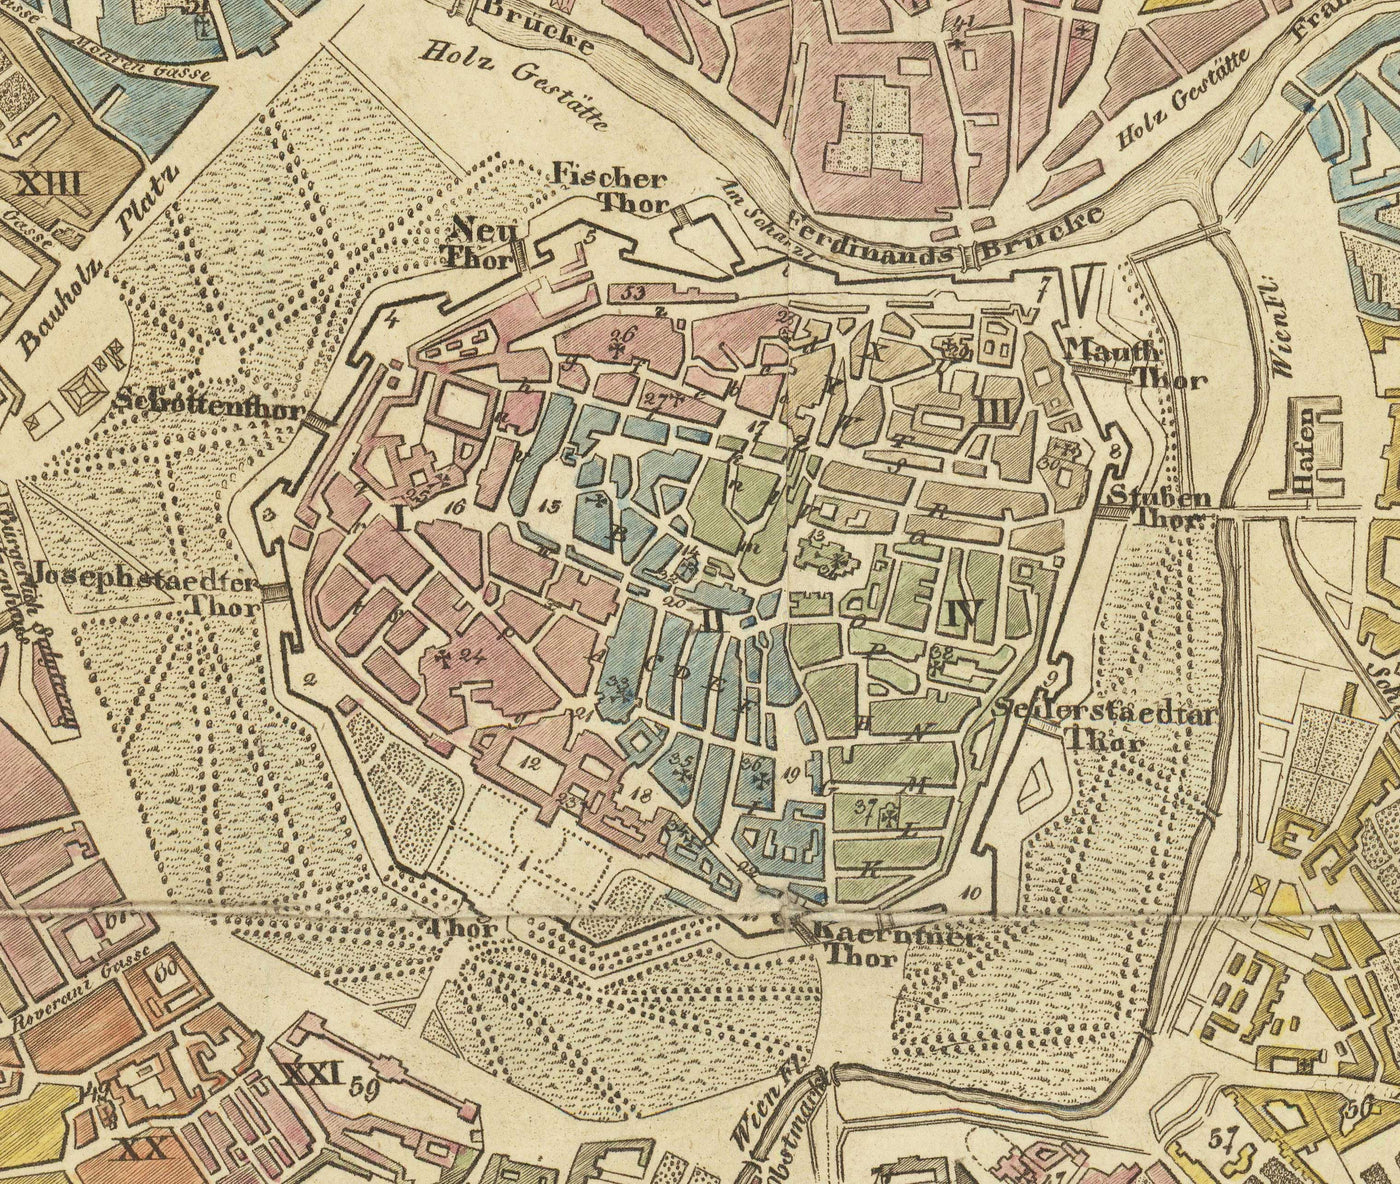 Alte Karte von Wien von Tranquillo Mollo aus dem Jahr 1803 - Augarten, Praterstern, Franzensbrücke, Burggarten, Stadtpark